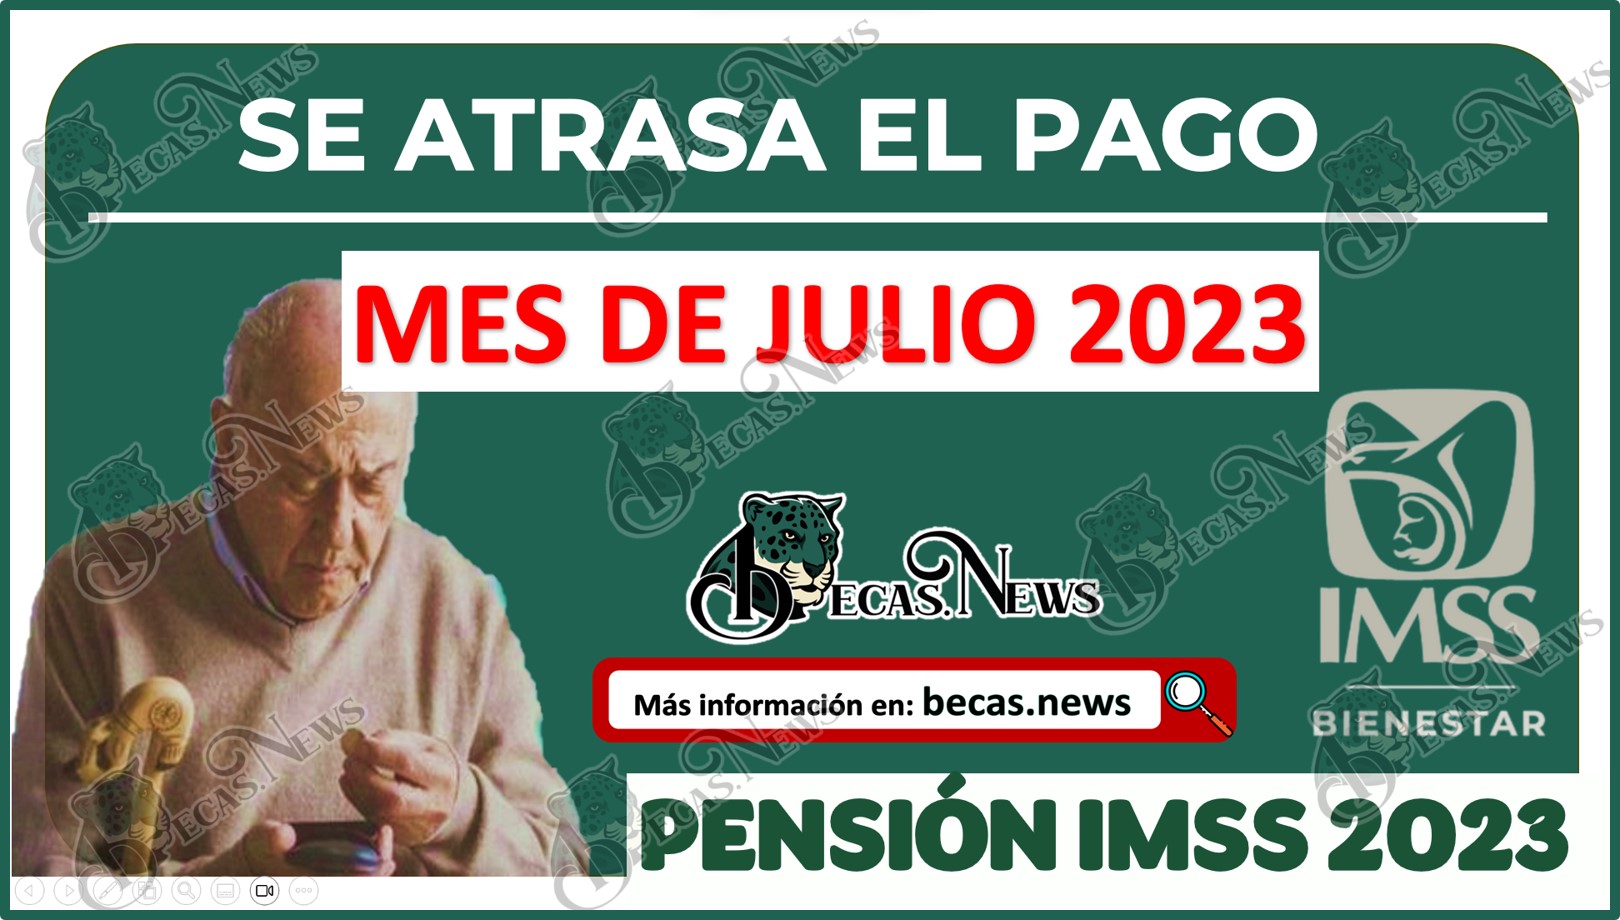 Se atrasa el PAGO de la Pensión del IMSS del mes de JUJLIO 2023